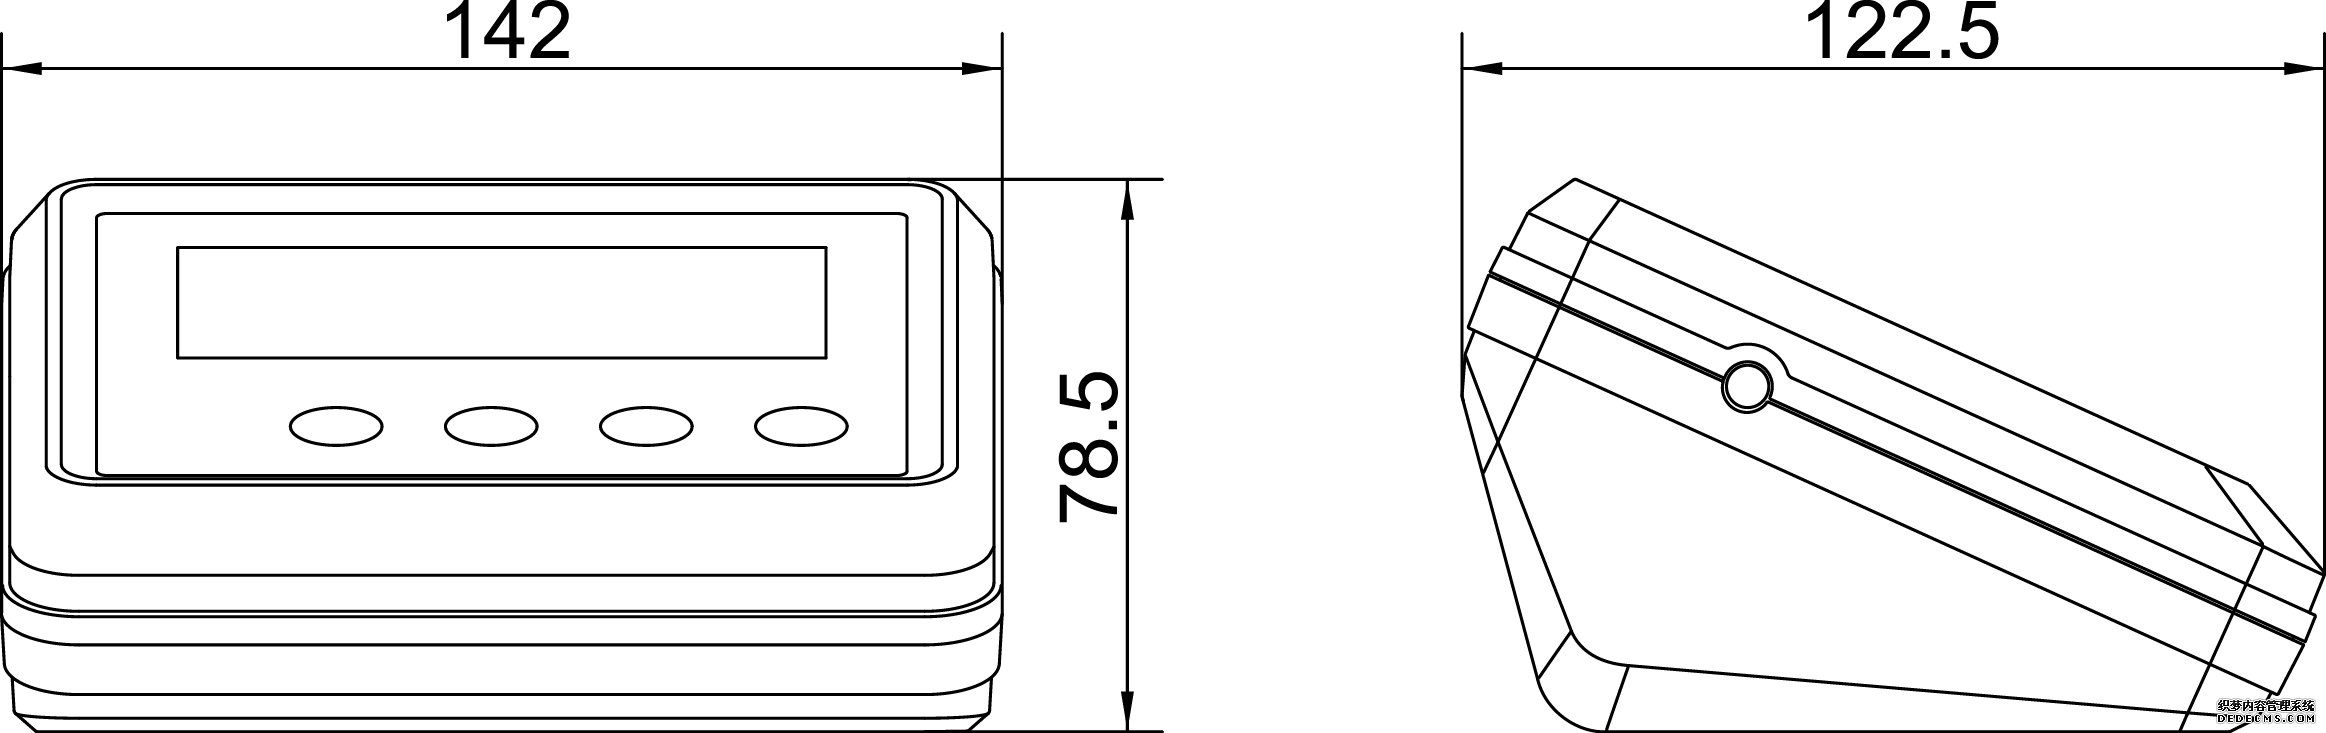 耀华XK3190-T12E台秤仪表产品尺寸